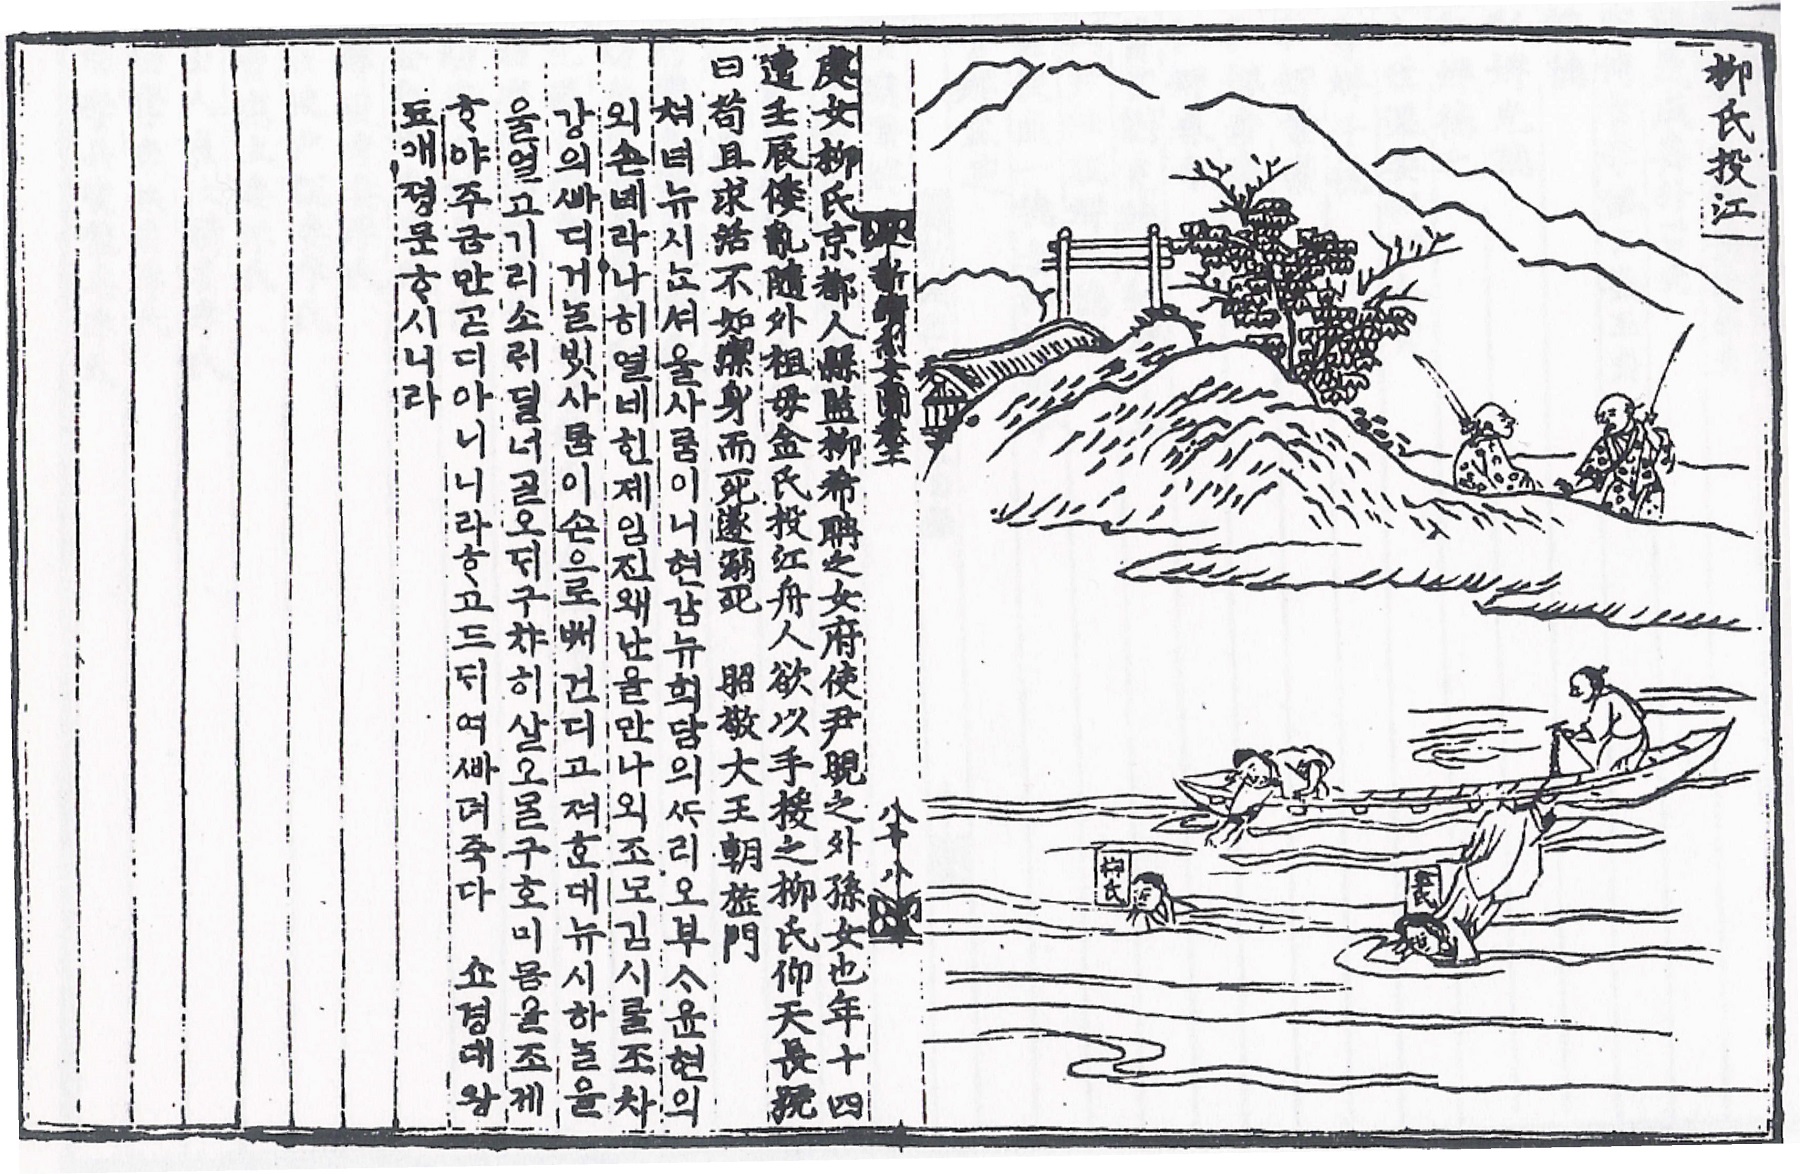 『東國新續三綱行實圖』(대제각 영인본, 1985)